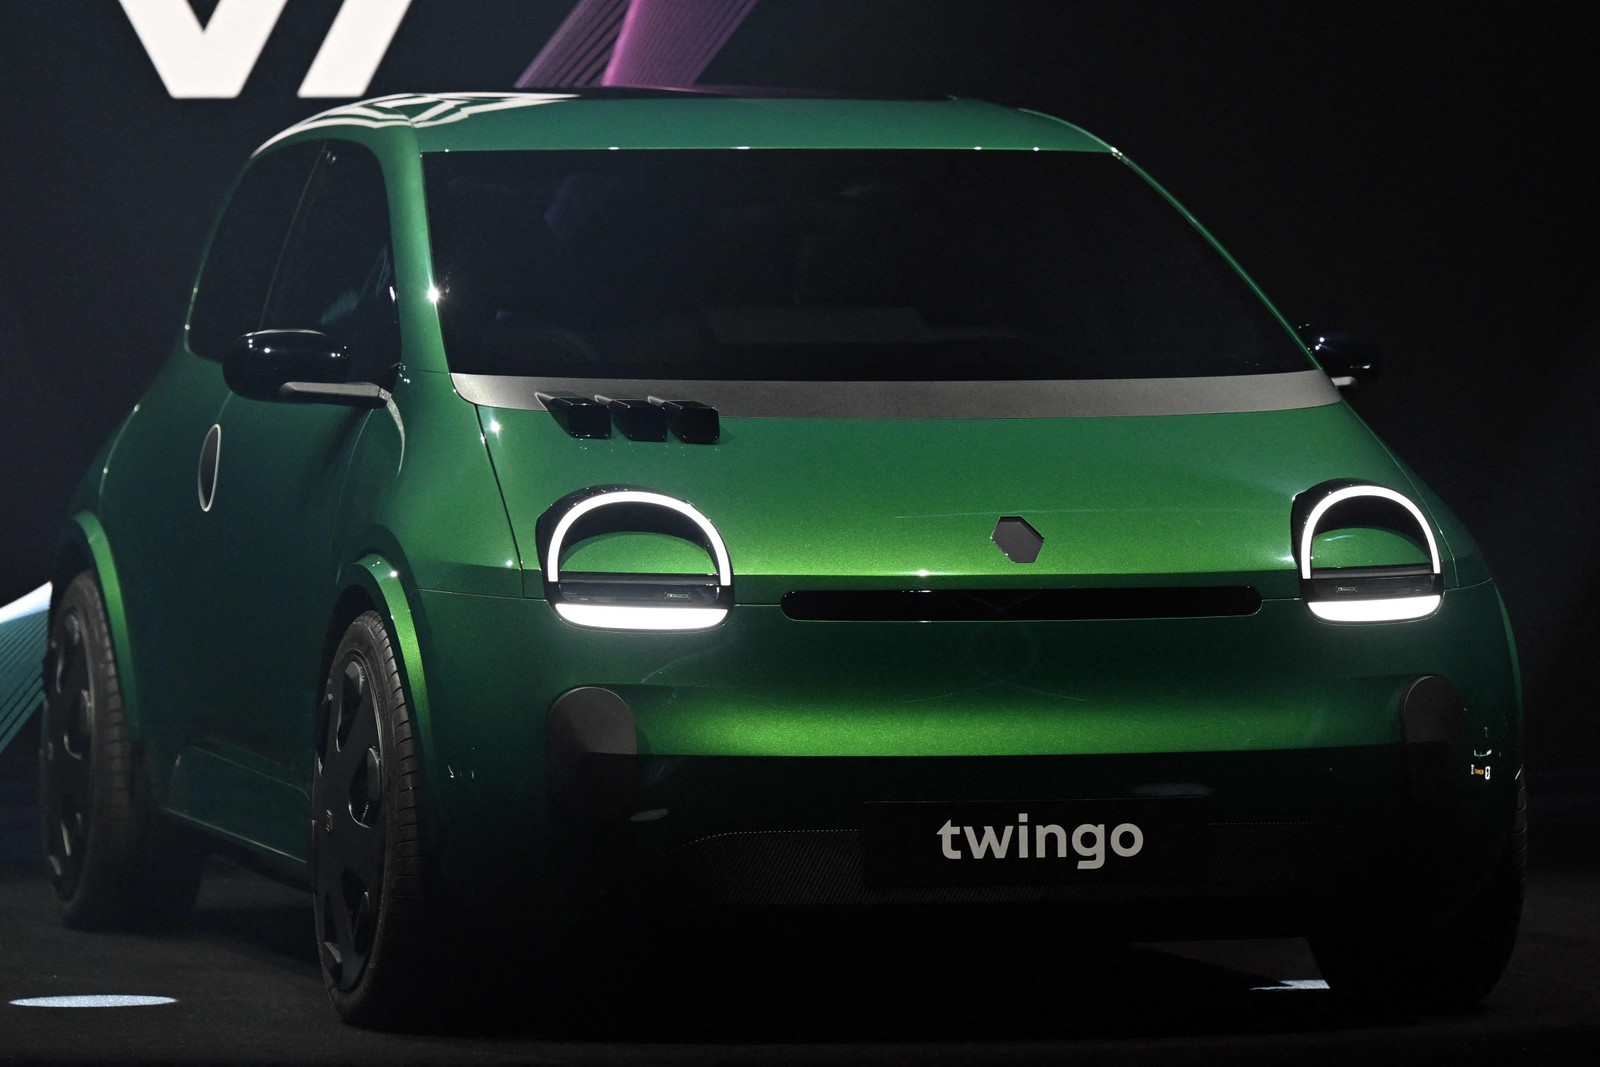 O novo Twingo vai competir no segmento dos automóveis elétricos de entrada com modelos como o futuro Volkswagen ID1, o Citroën e-C3 e rivais chineses — Foto: Miguel Medina / AFP